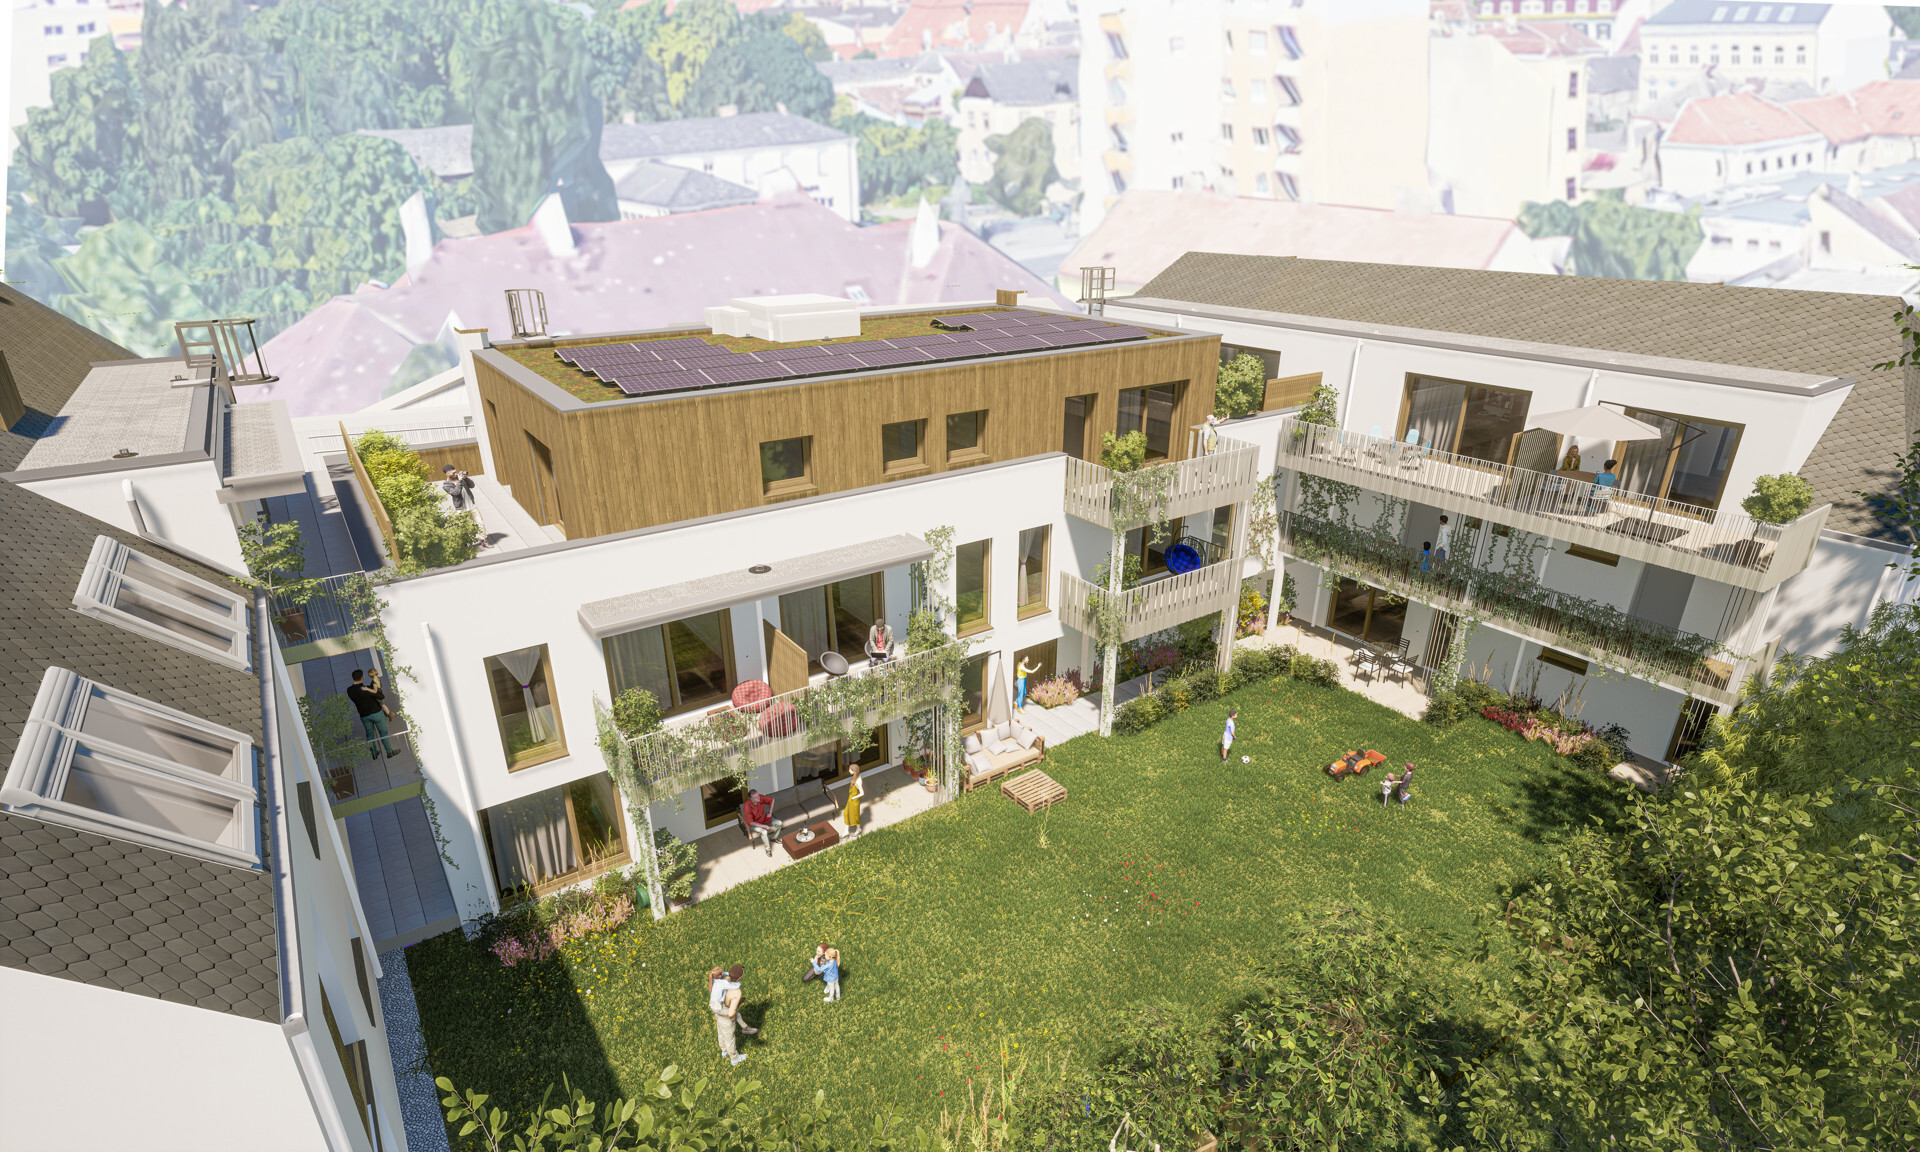 Maisonette-Wohnung mit Gartenanteil in Ruhelage - nachhaltig Wohnen im Grünen - zu kaufen in 2340 Mödling